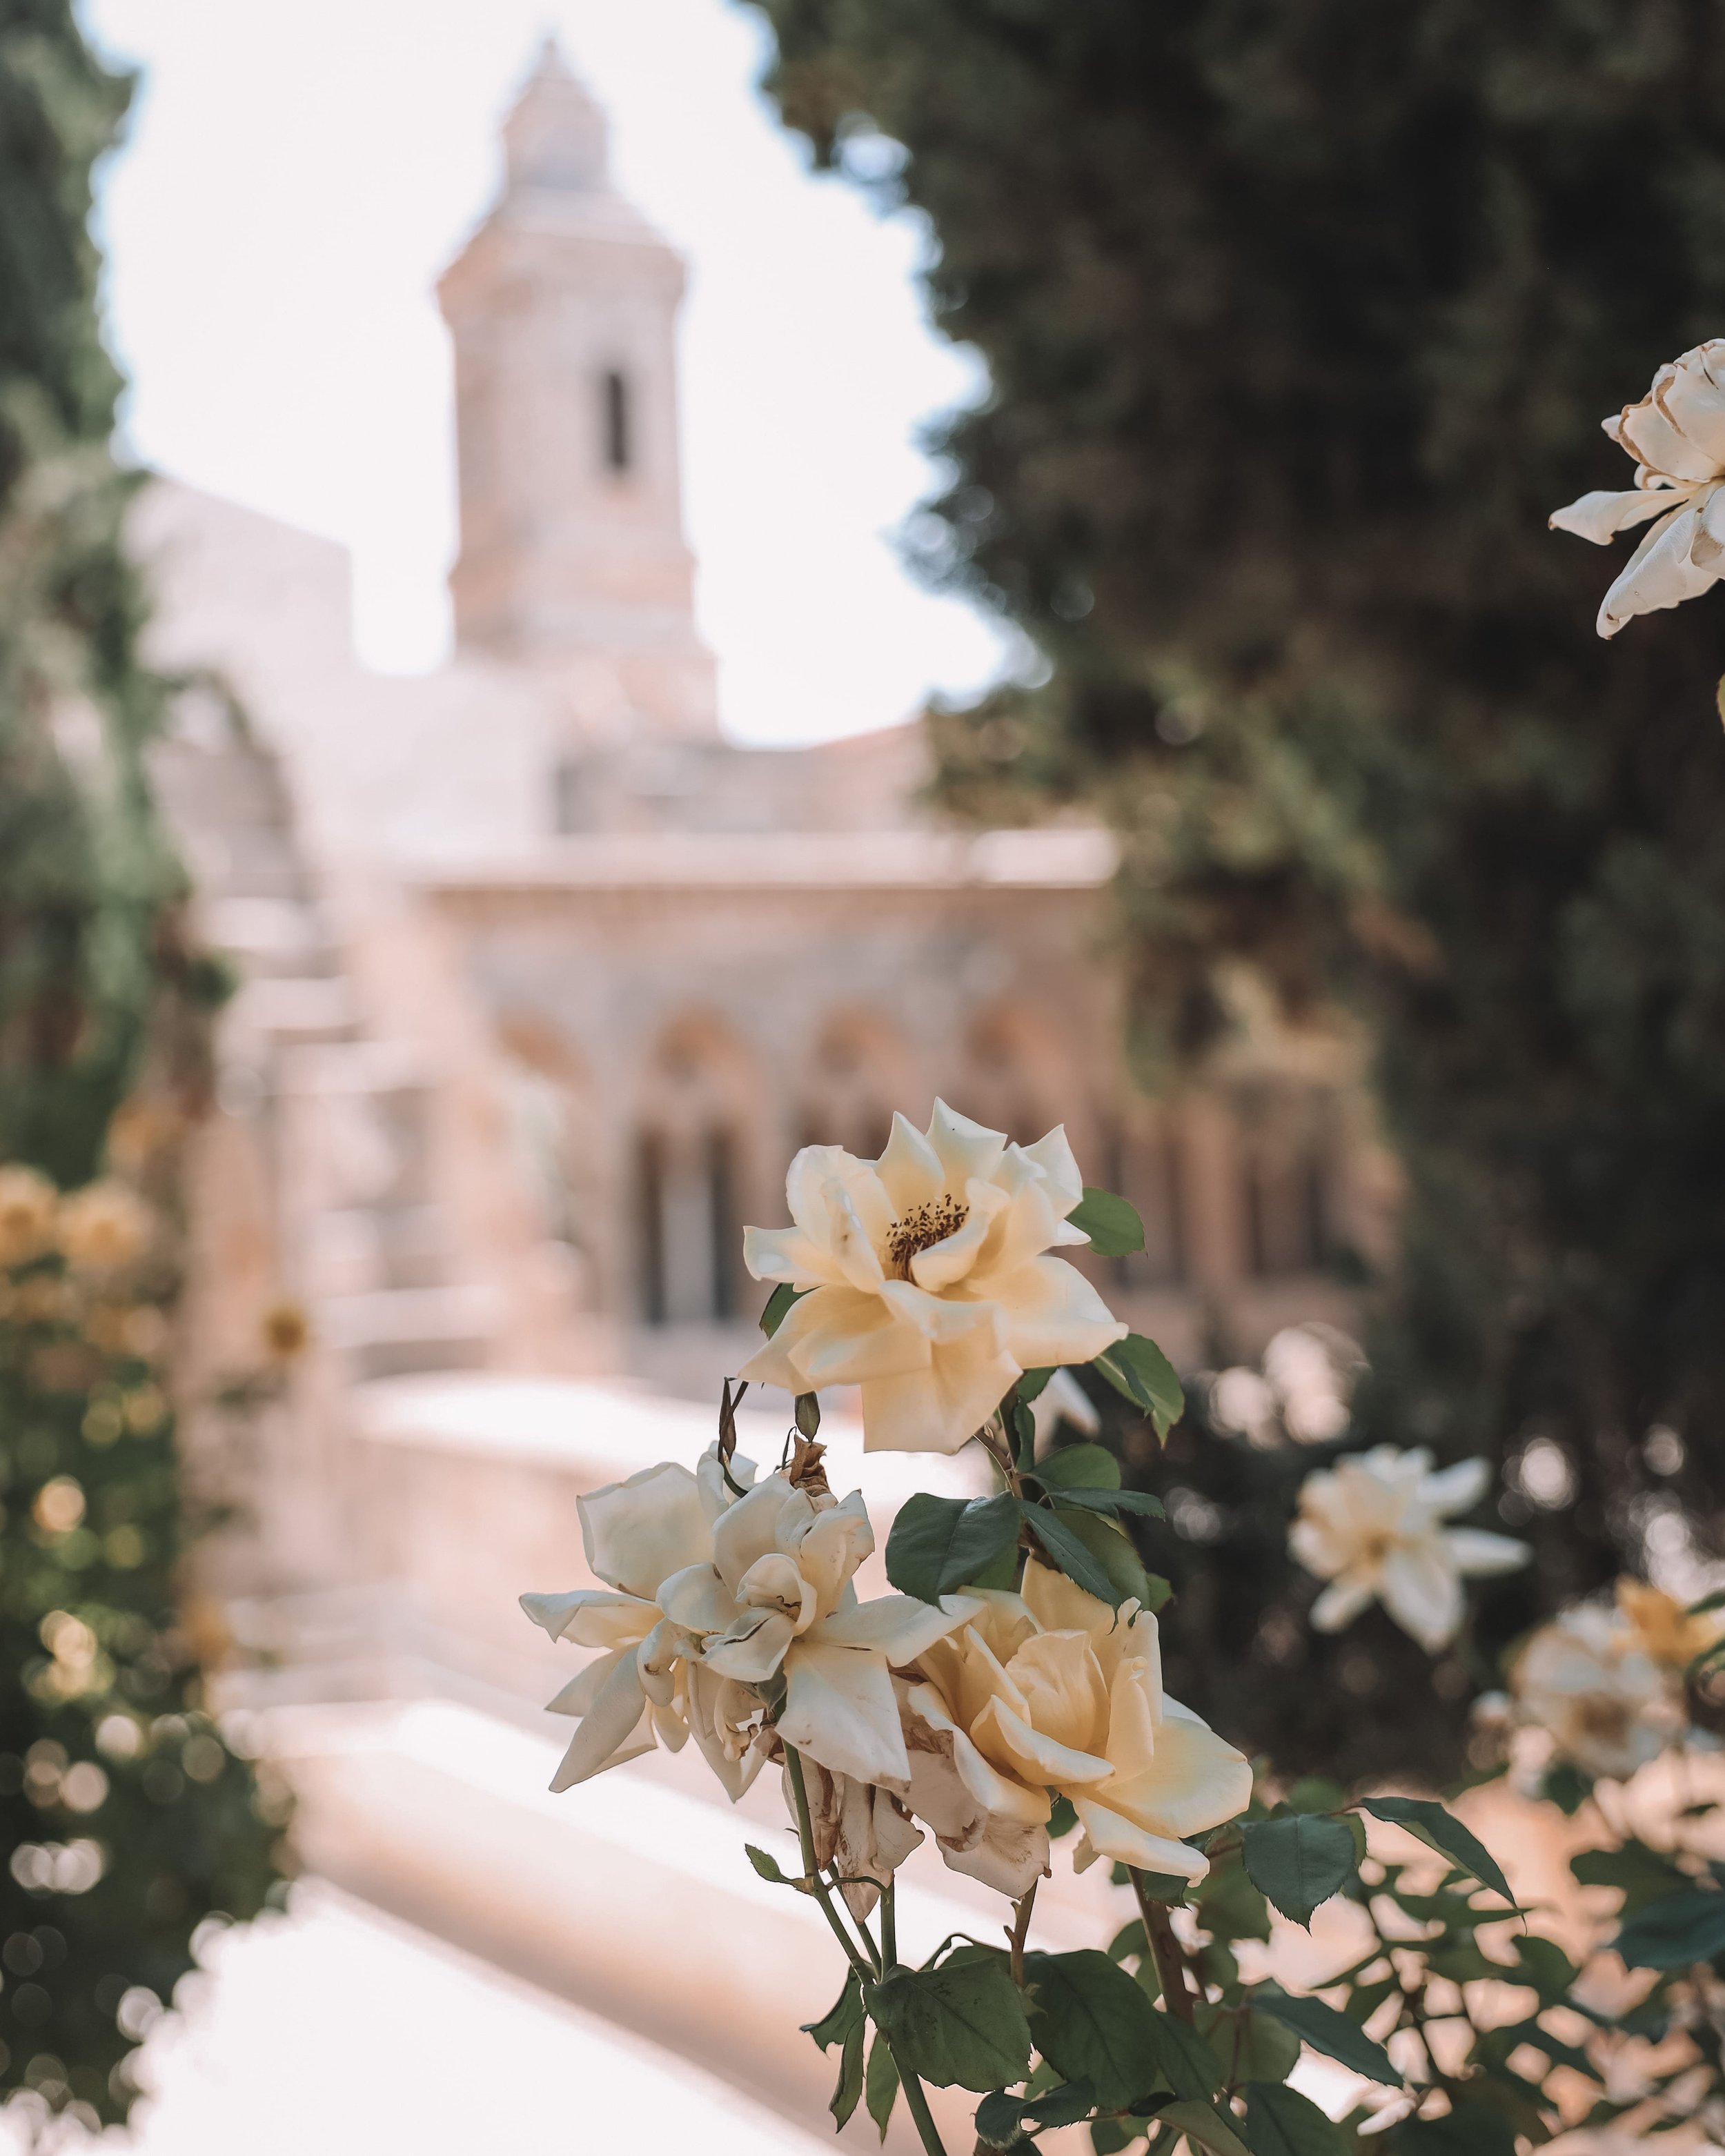 Les roses jaunes de l'église Pater Noster - Vieille Ville - Jérusalem - Israël